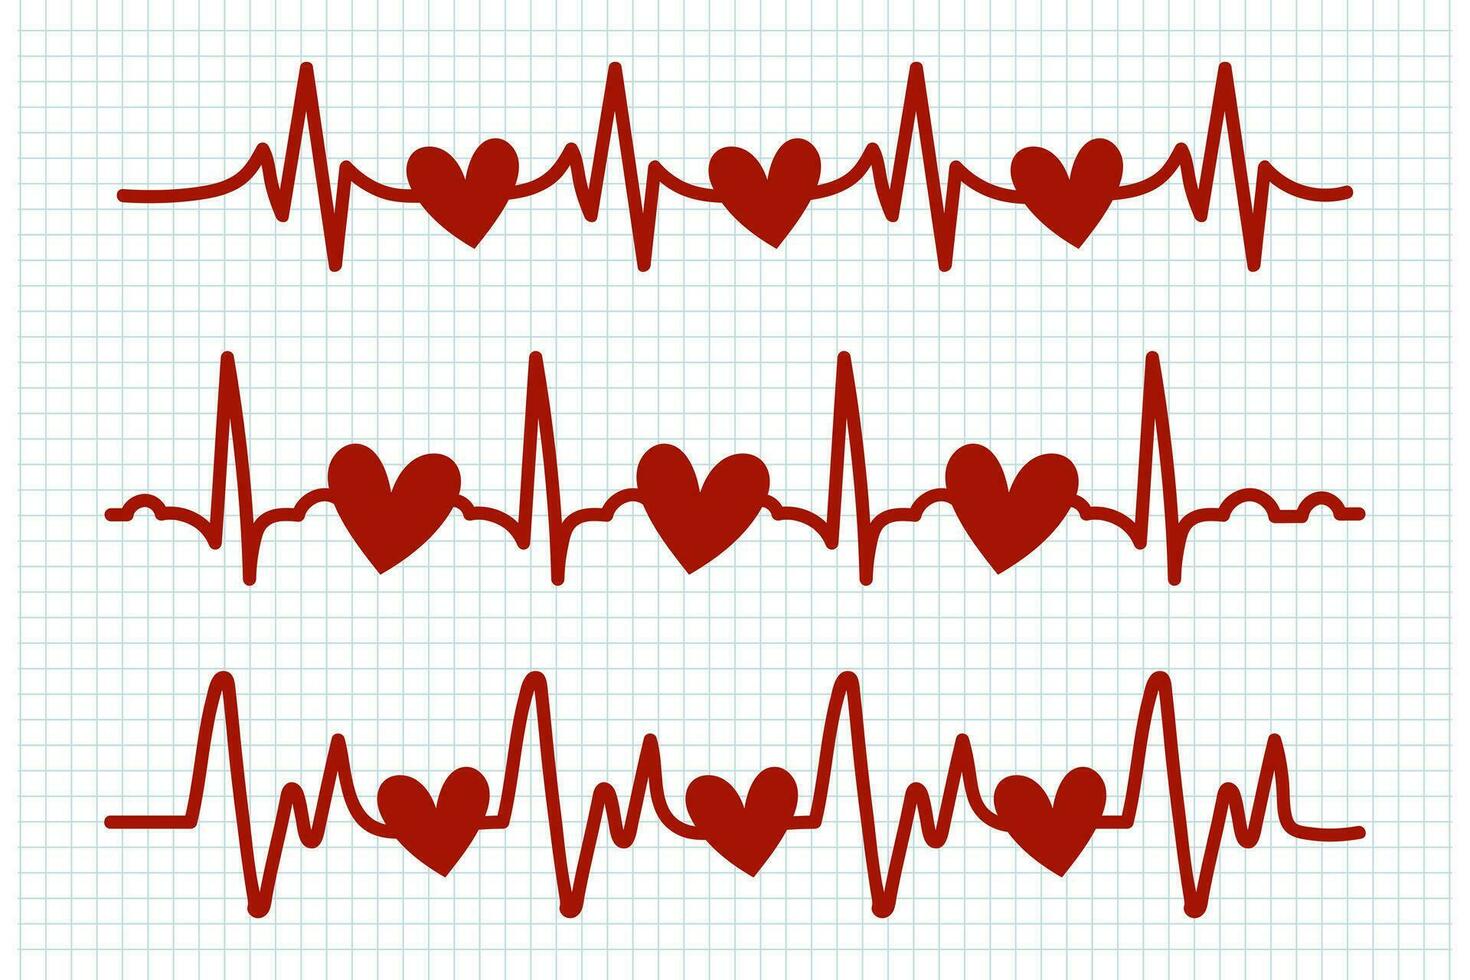 Herzschlag, Symbole Satz. rot Herz schlägt auf ein kariert Blatt. Kardiogramm von das Herz. Design Elemente, Kritzeleien, Vektor